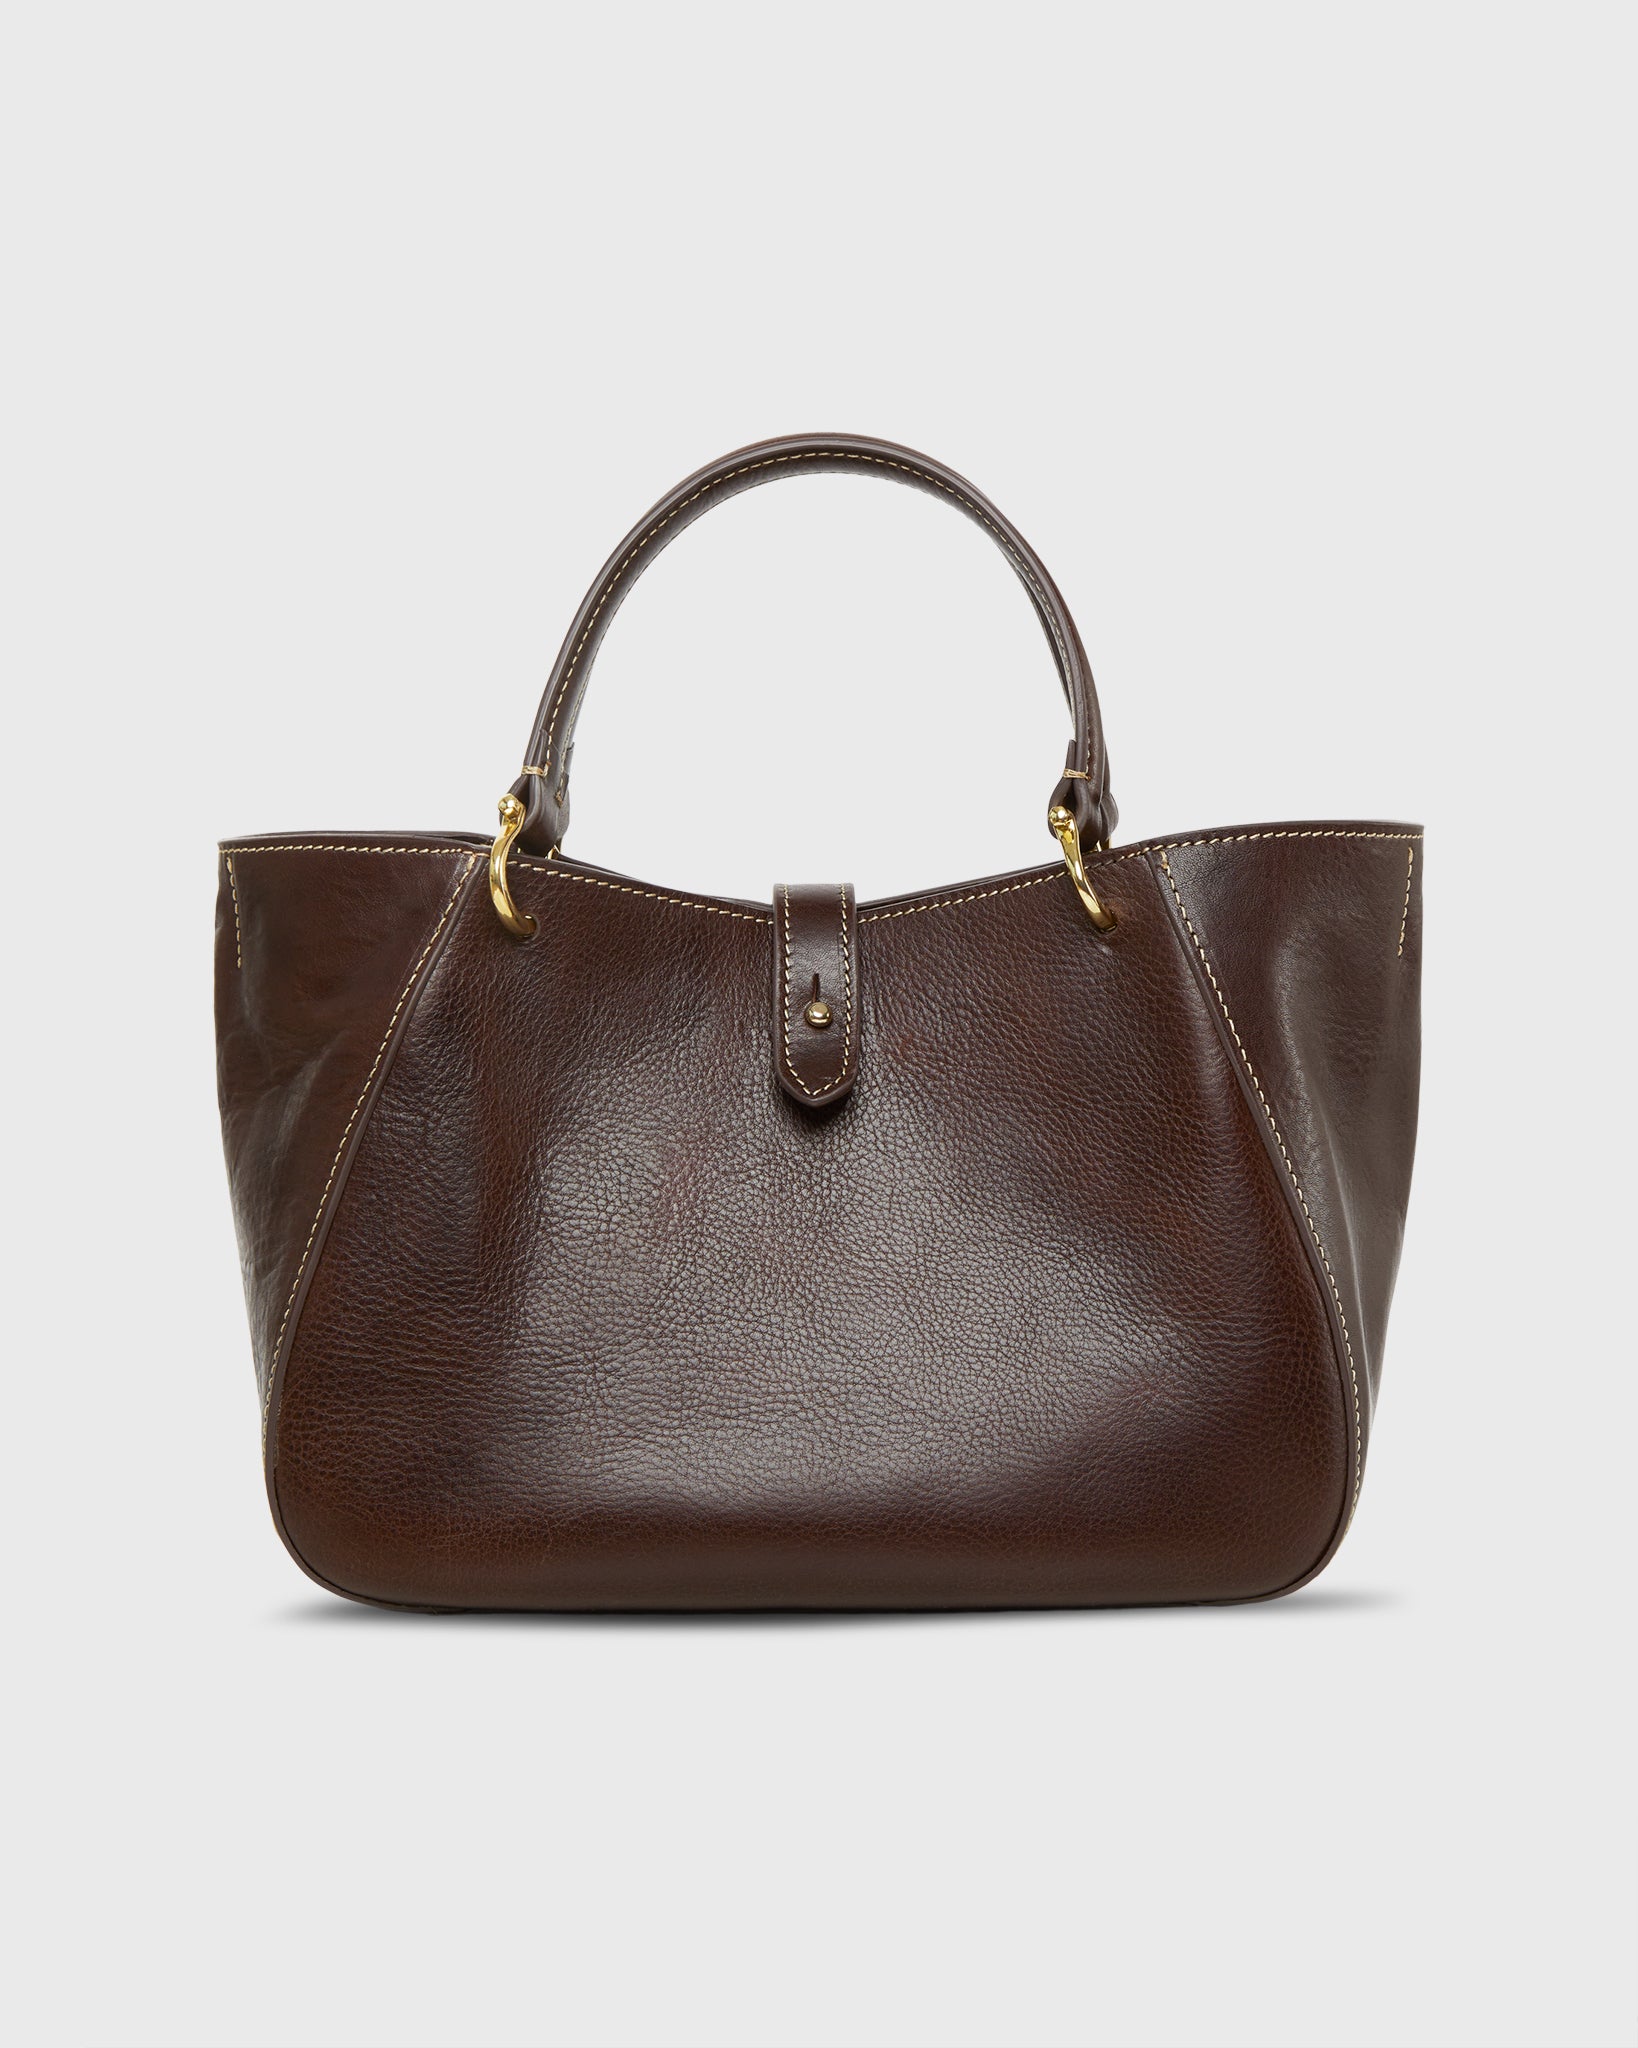 Annalisa Satchel Bag in Dark Brown Leather